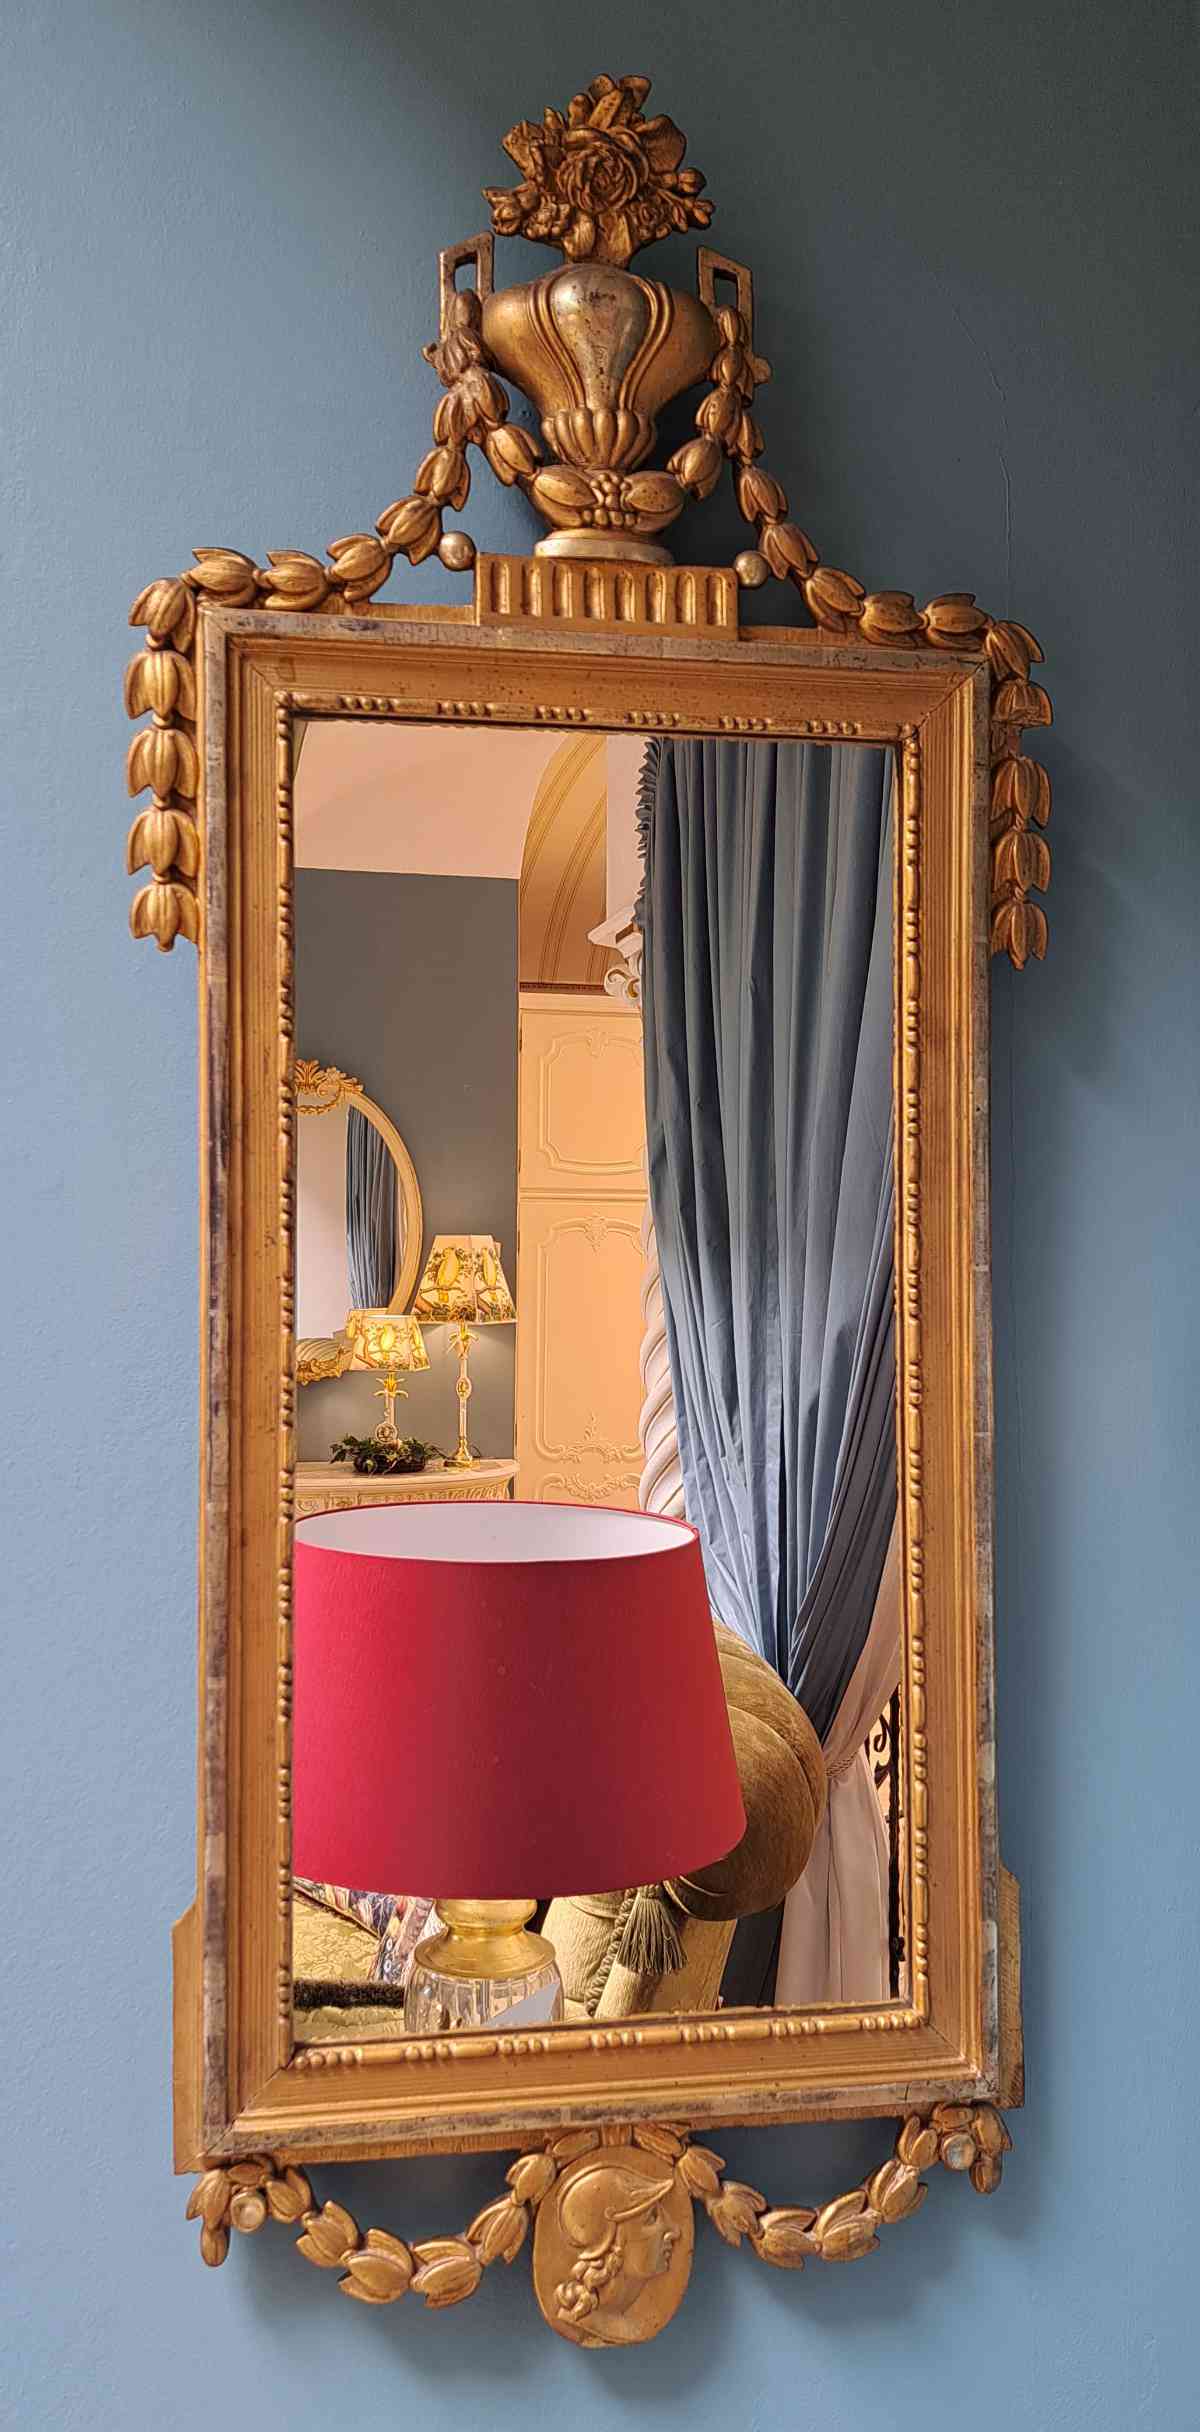 Antiker Spiegel Louis Seize Stil, aus dem 18. Jh., handgeschnitzt, sehr groß, Frontalansicht.